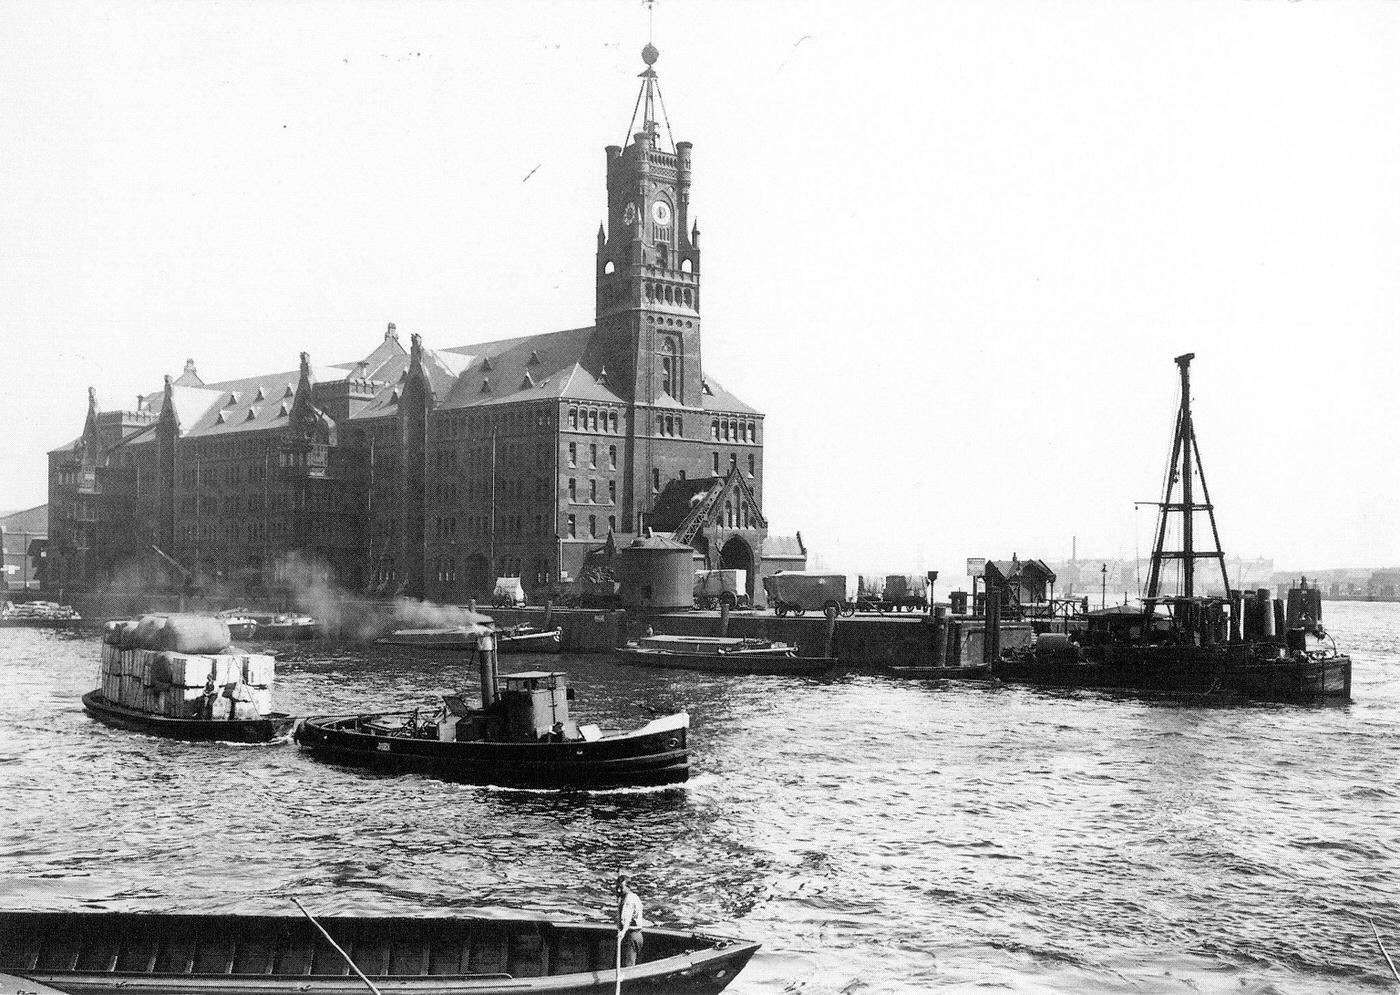 Kaiserspeicher at Kaiserhoeft in Hamburg Altstadt, Germany, around 1900.